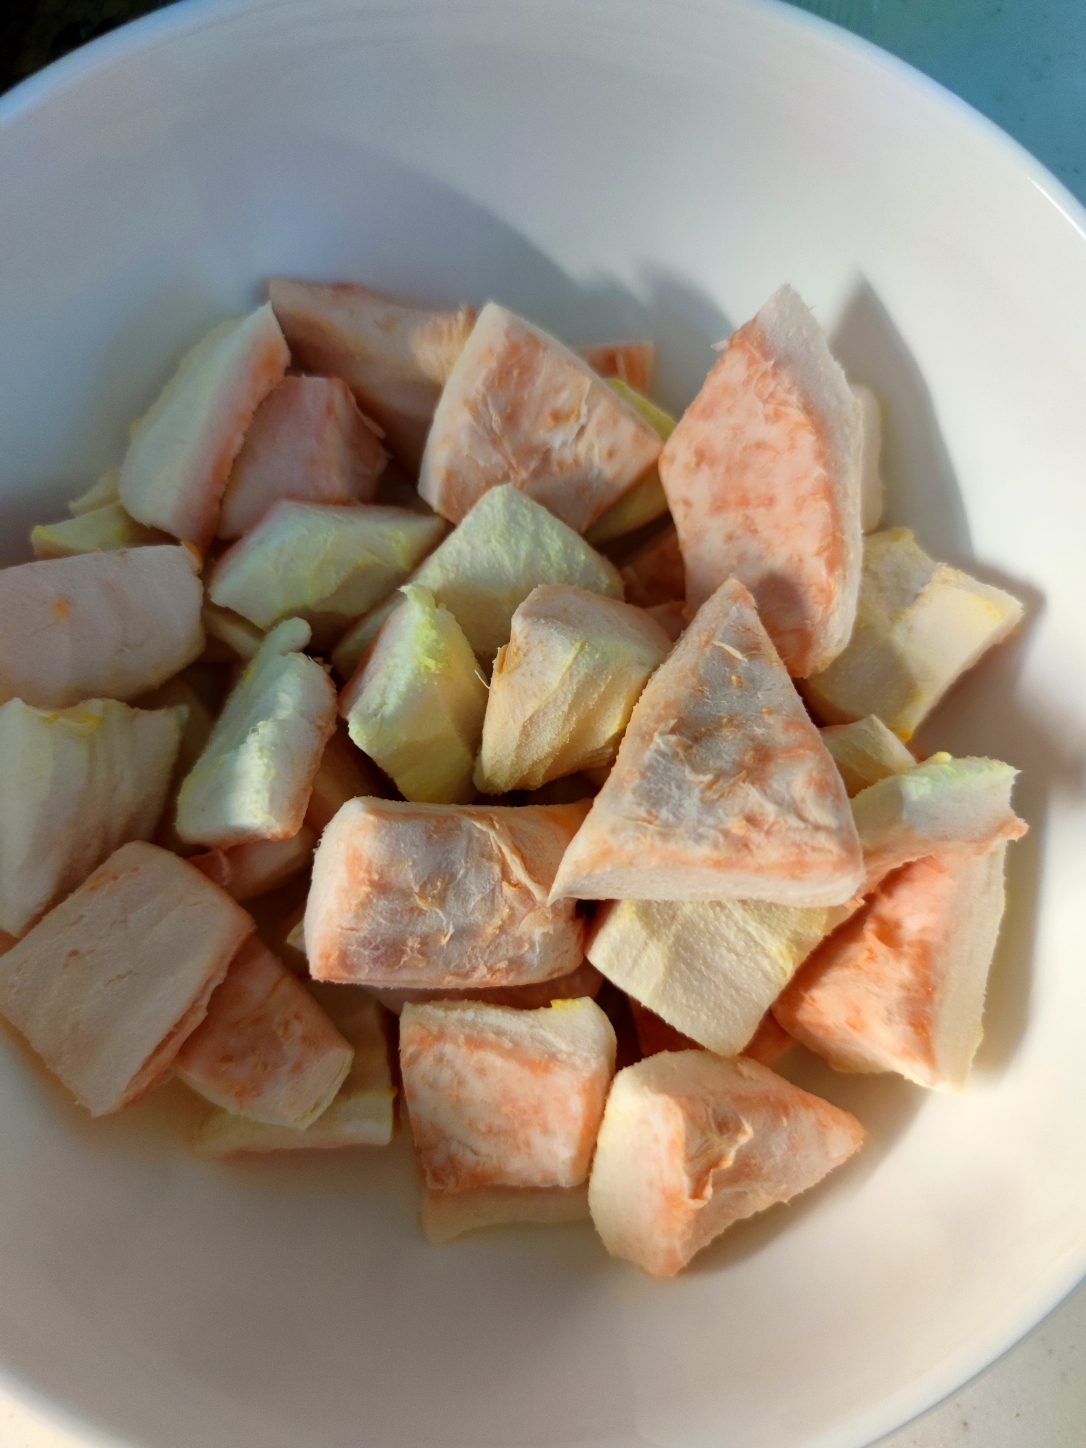 干燥冬季里好吃的润喉柚子皮糖的做法步骤图 大尾巴龙爱美食 下厨房